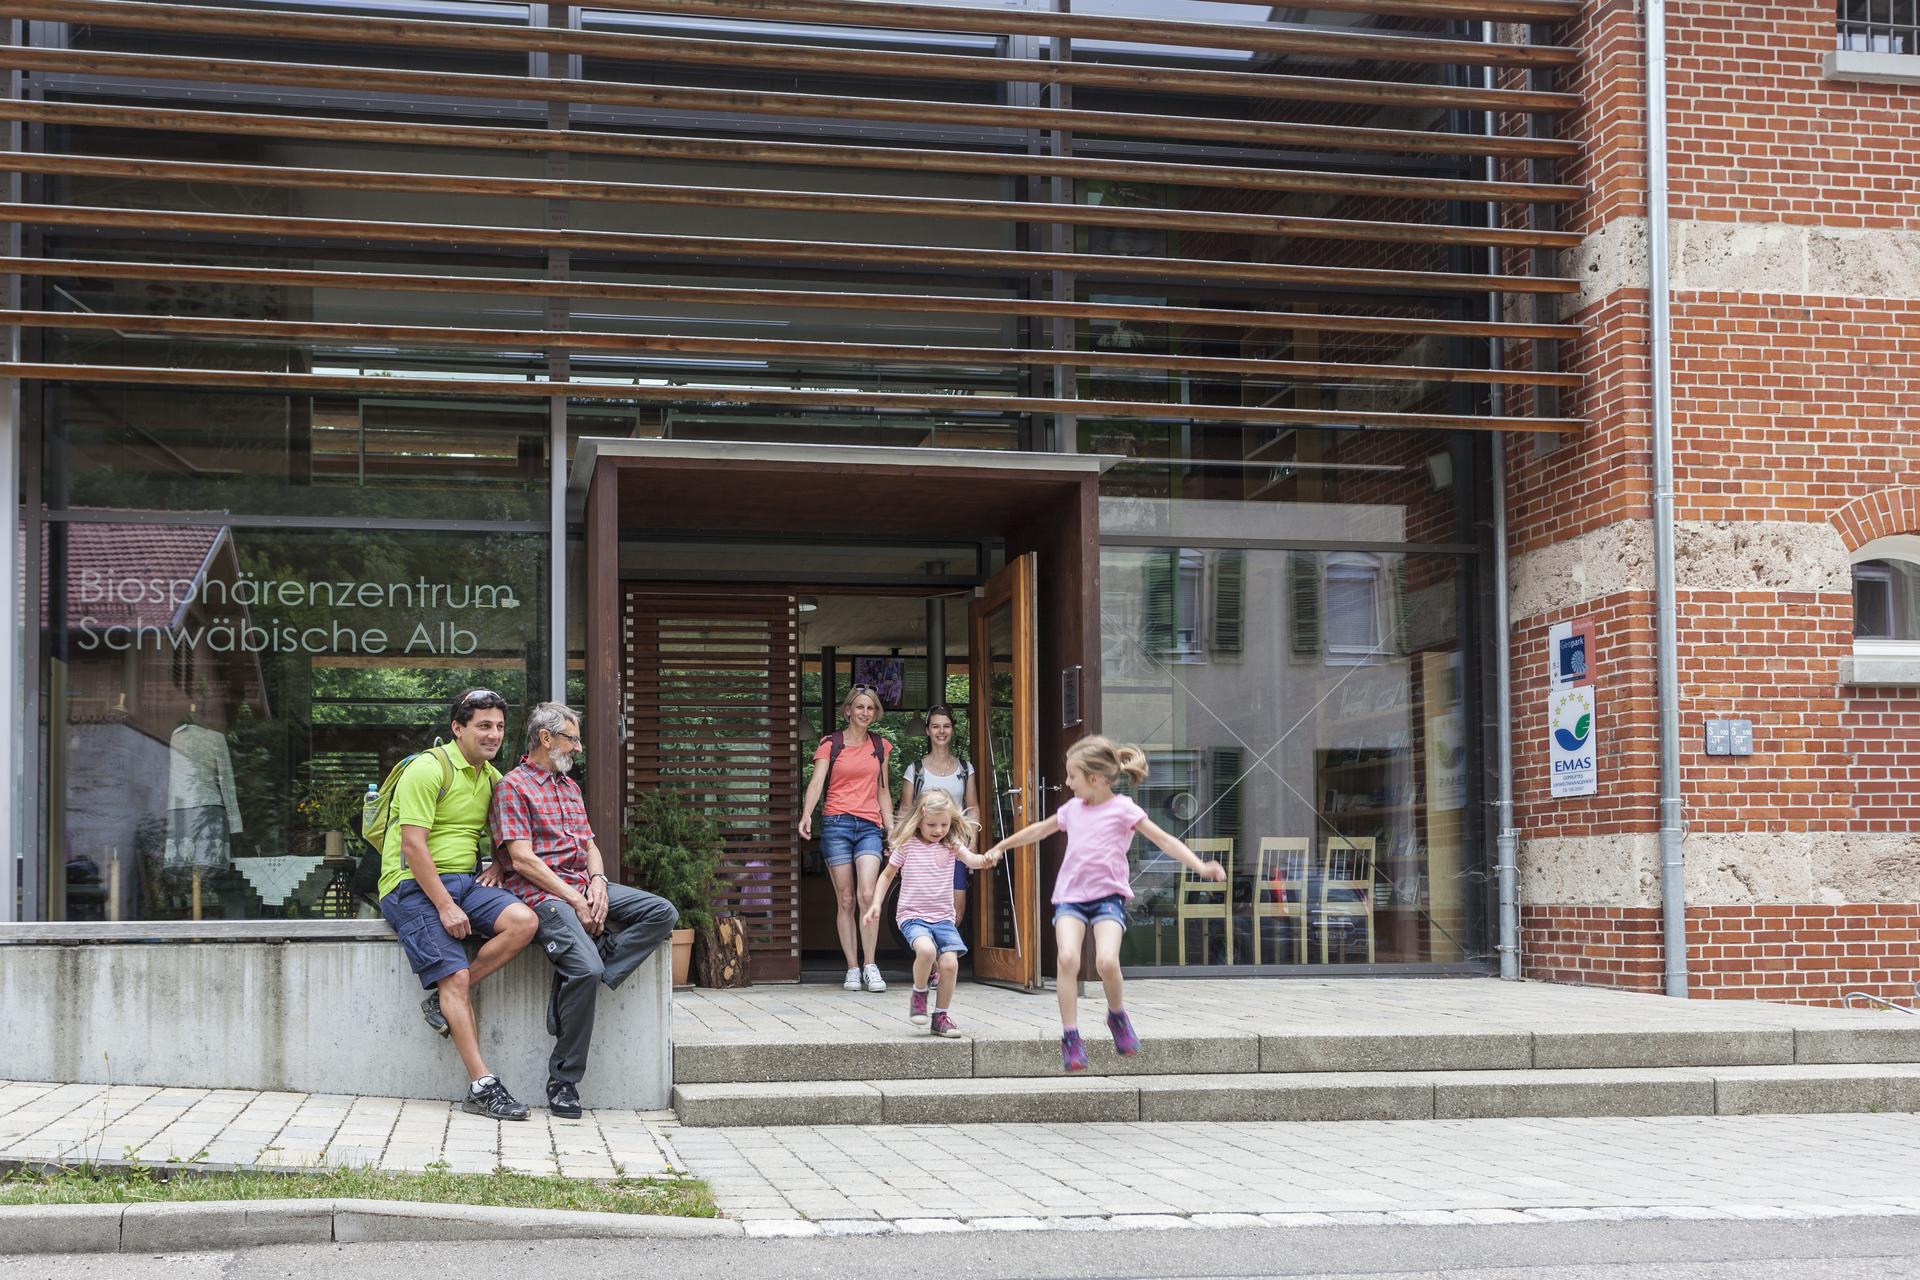 Das Biosphärenzentrum Schwäbische Alb in Münsingen im Biosphärengebiet. Zwei Personen sitzen auf einer Steinmauer vor dem Biosphärenzentrum Schwäbische Alb. Aus der Tür kommen  lächelnd zwei Erwachsene, zwei Kinder springen die Stufen vor dem Eingang hinunter.